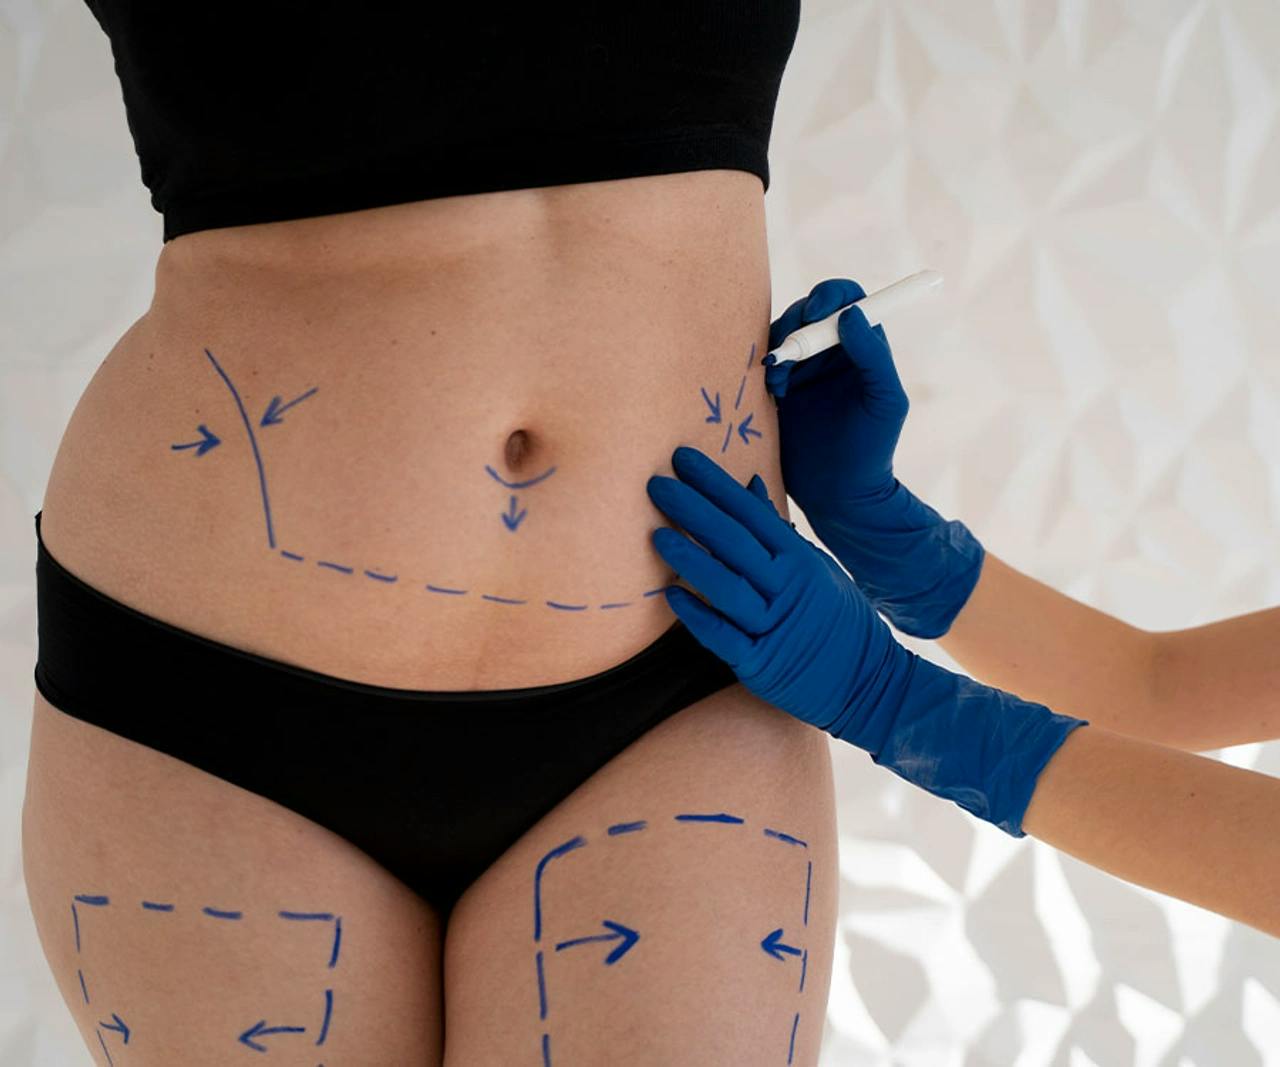 Liposuction in Turkey